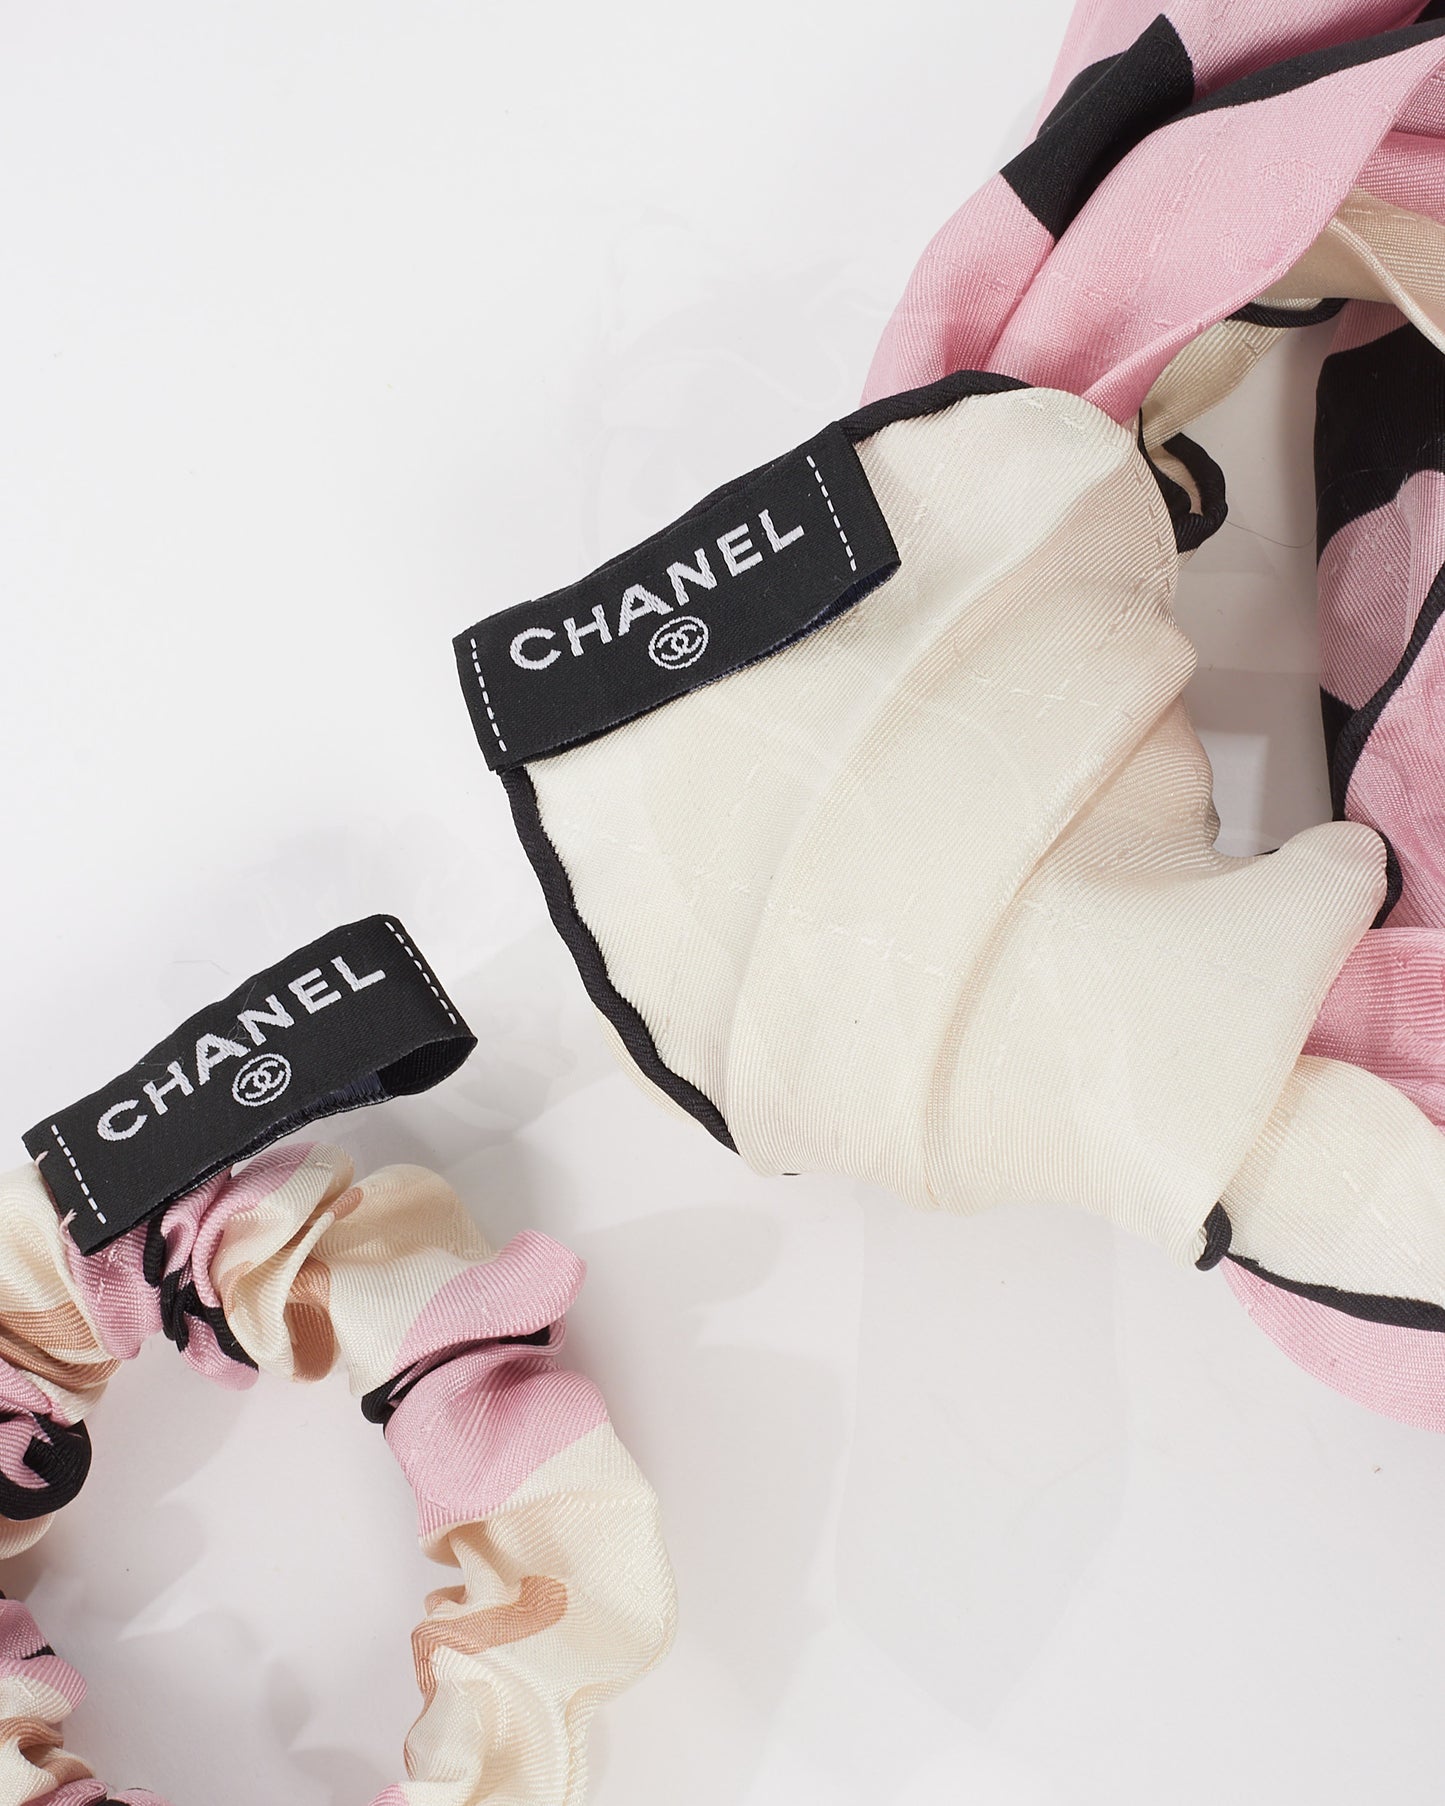 Chanel Pink & Black Silk Hair Scarf Scrunchie